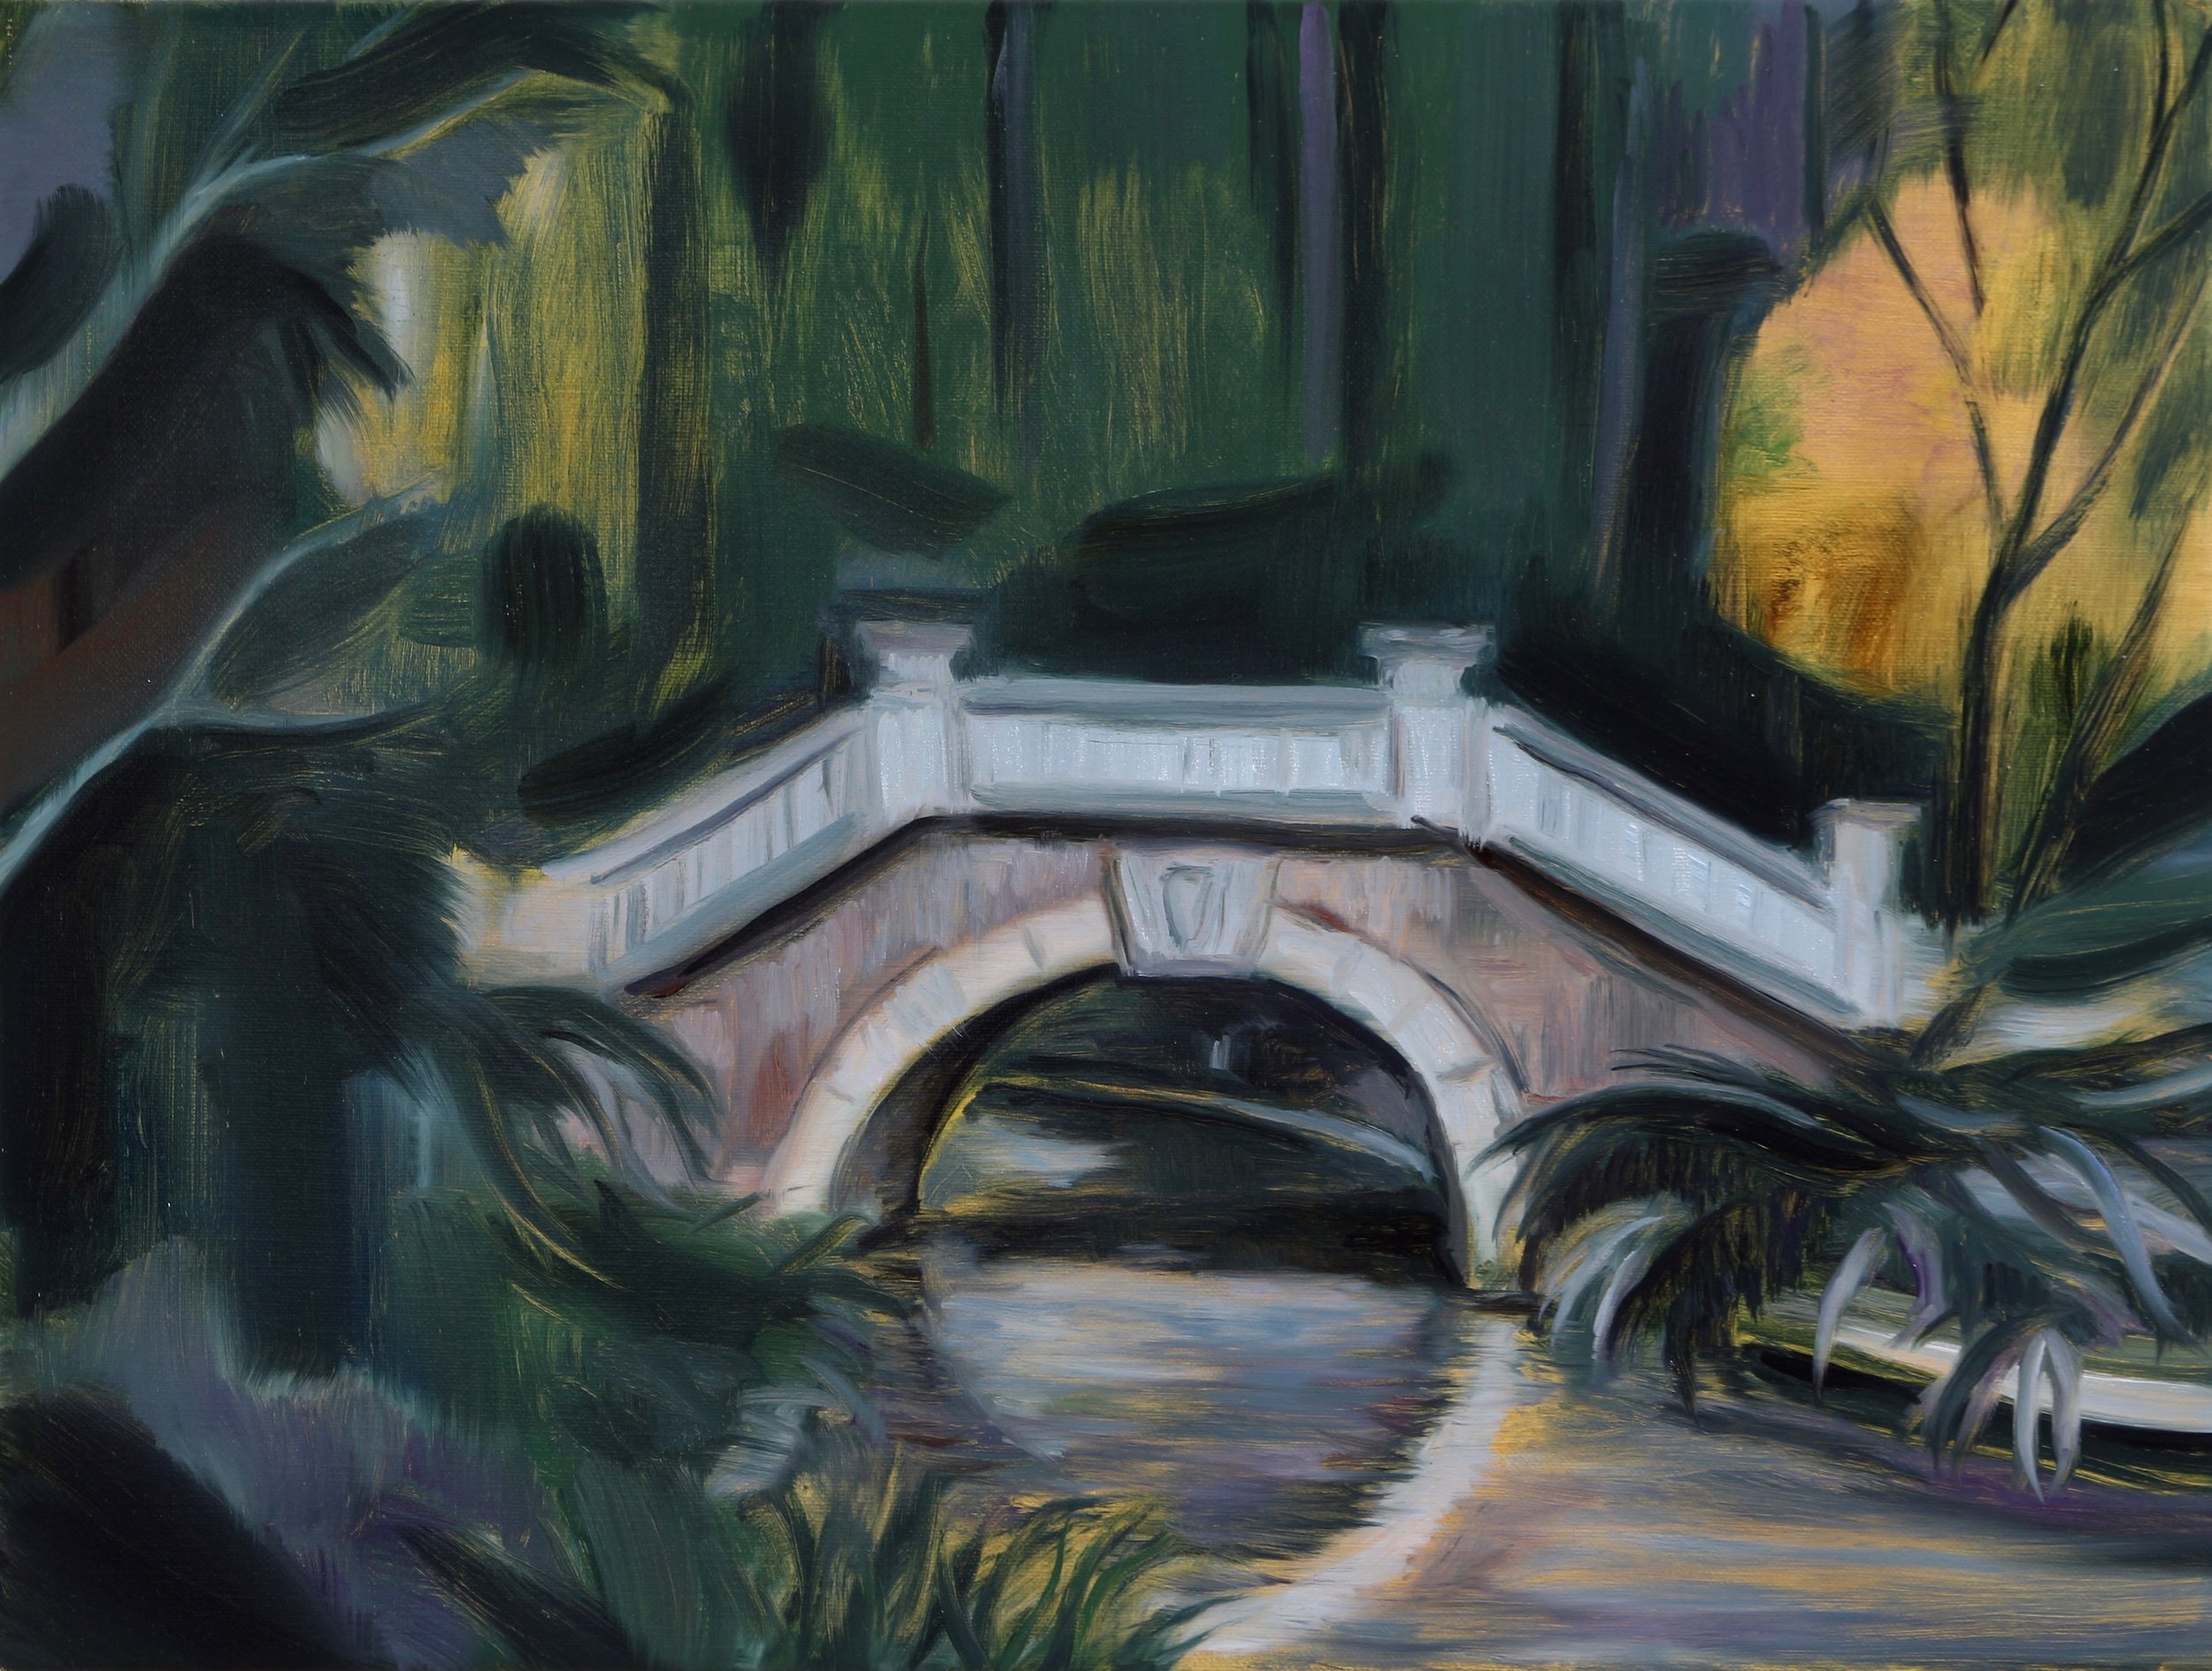 Parc Monceau (The Bridge), Oil on linen, 30x40cm, 2017